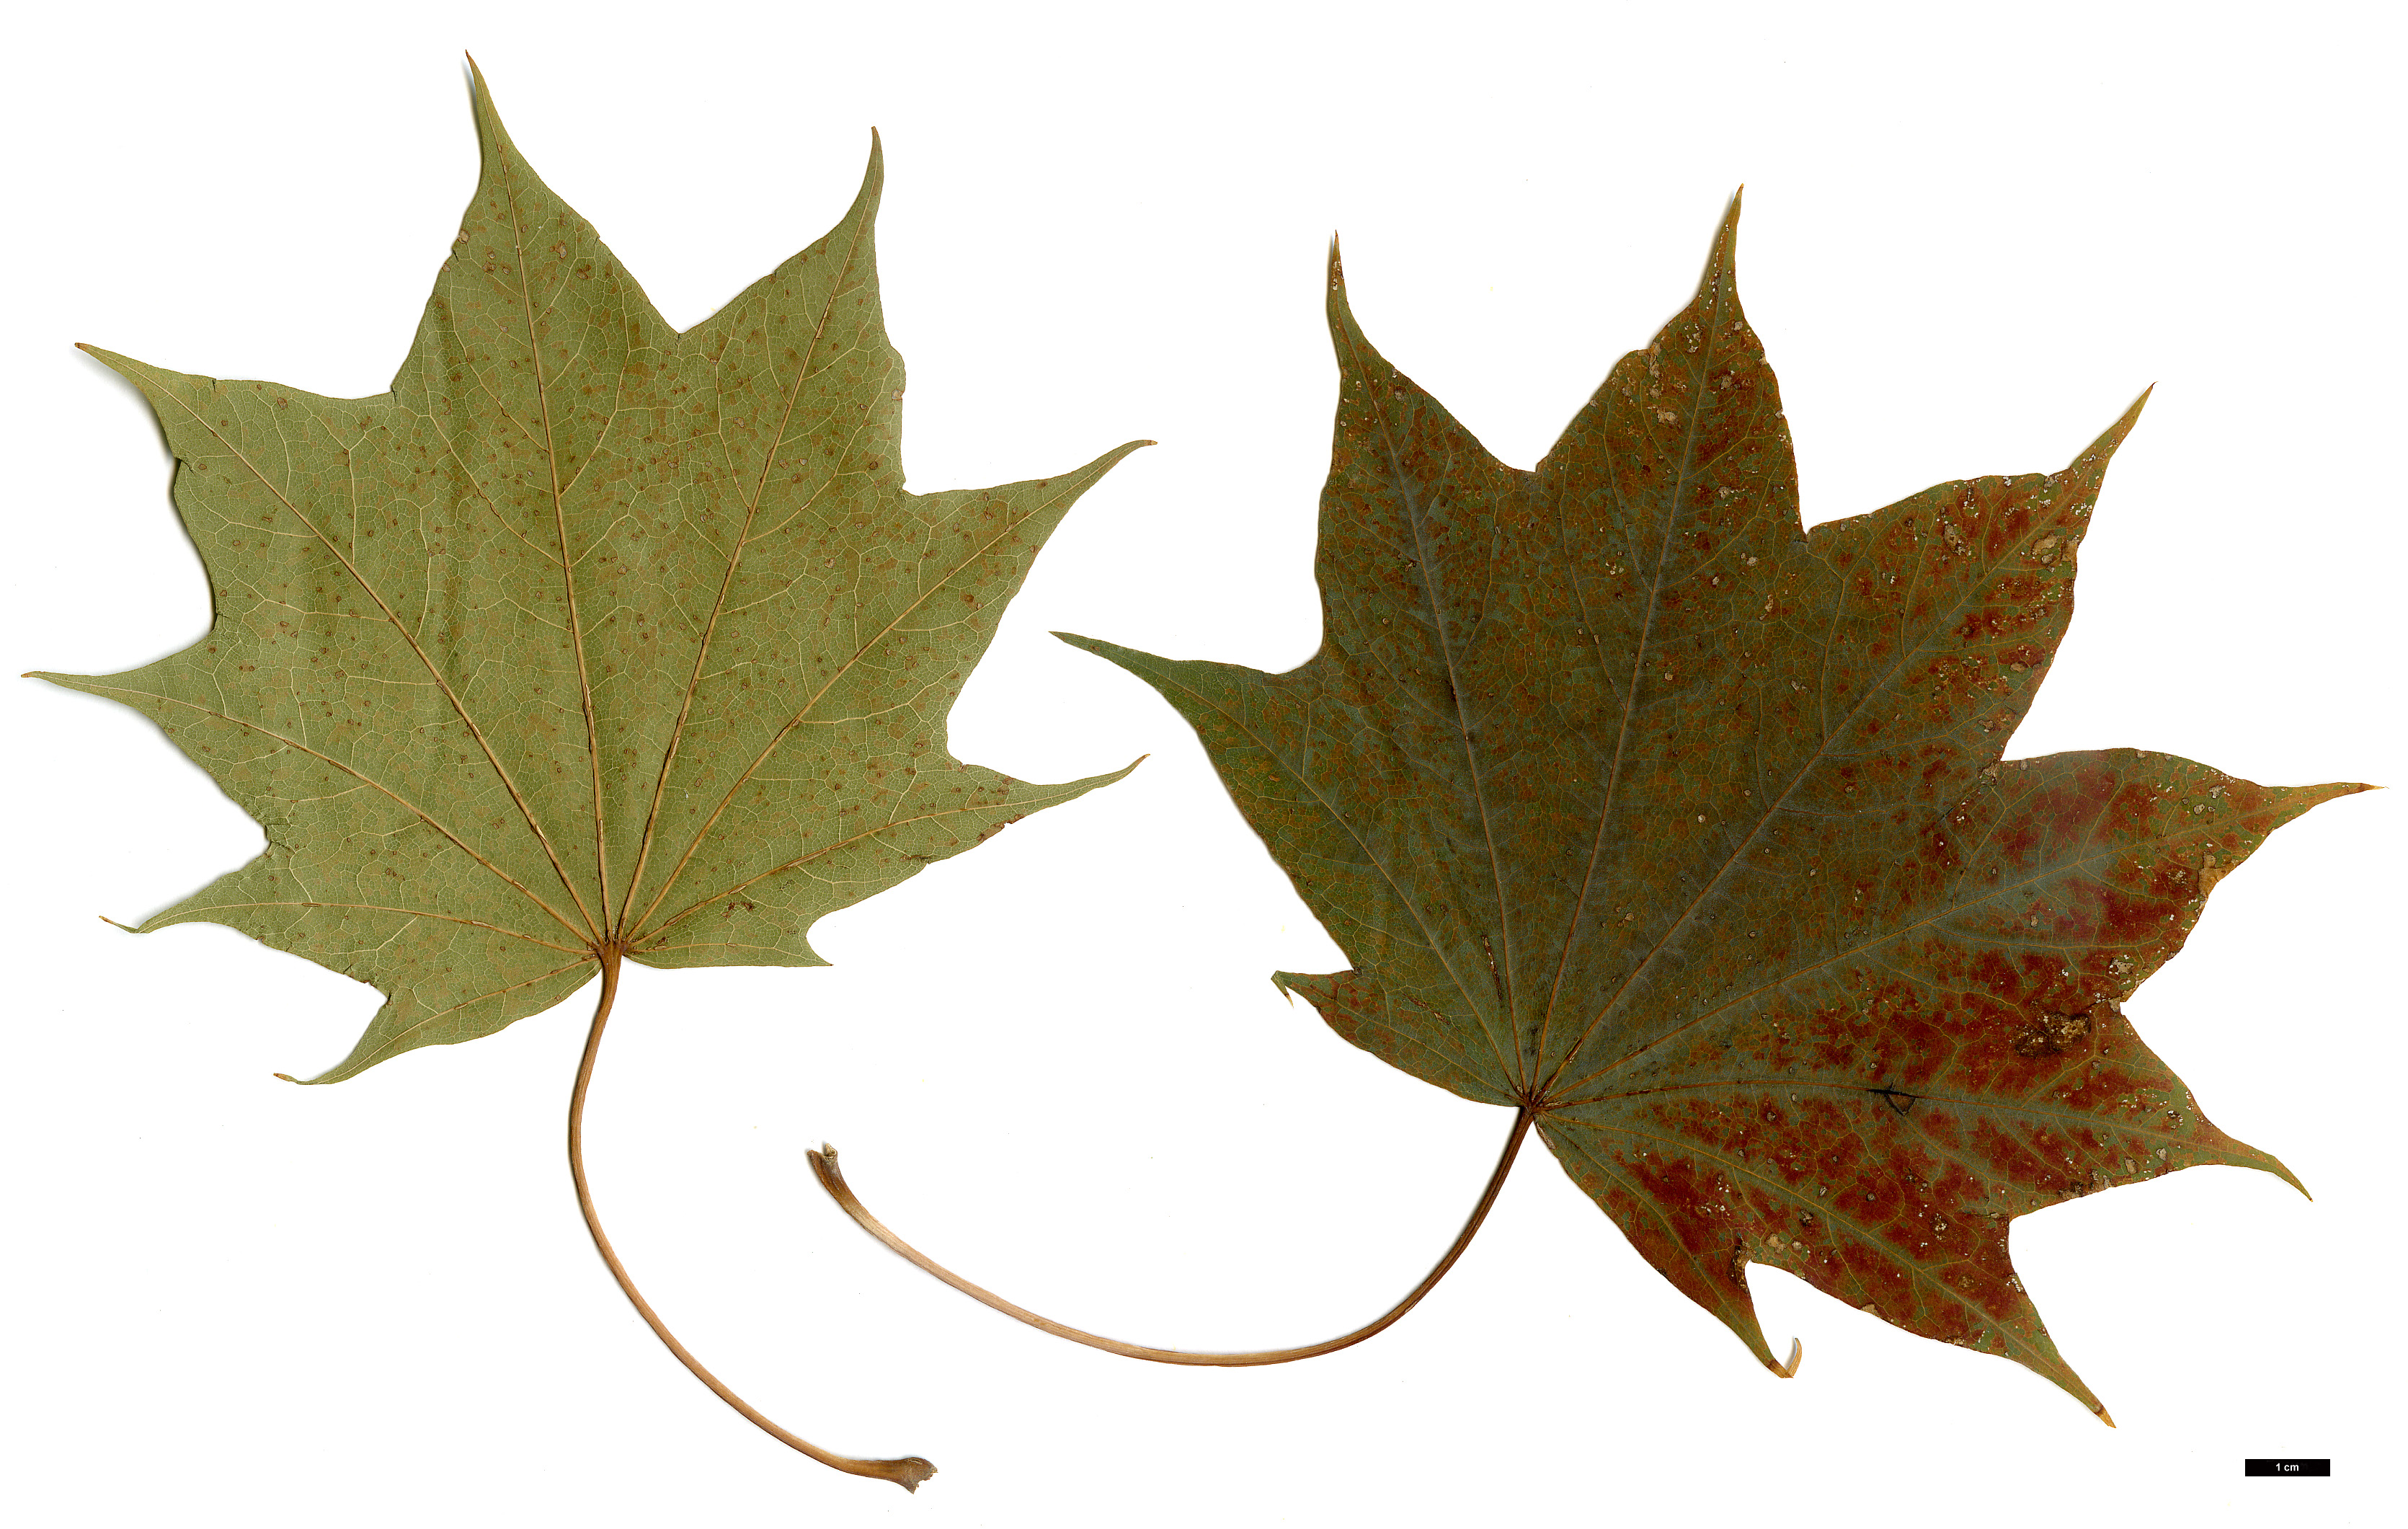 High resolution image: Family: Sapindaceae - Genus: Acer - Taxon: pictum - SpeciesSub: subsp. okamotoanum